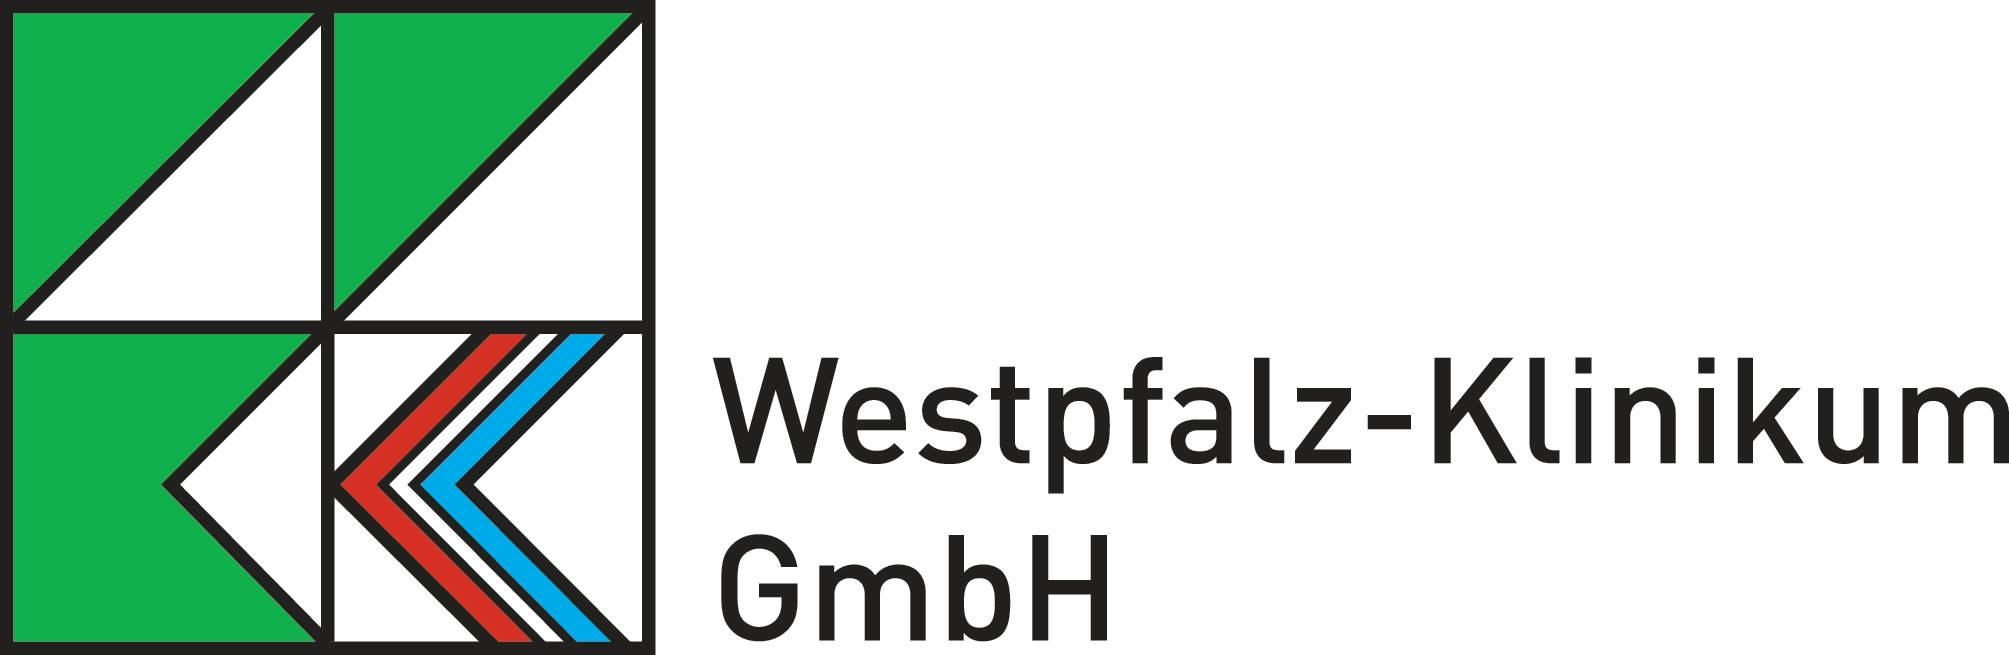 Wkk Logo Cmyk